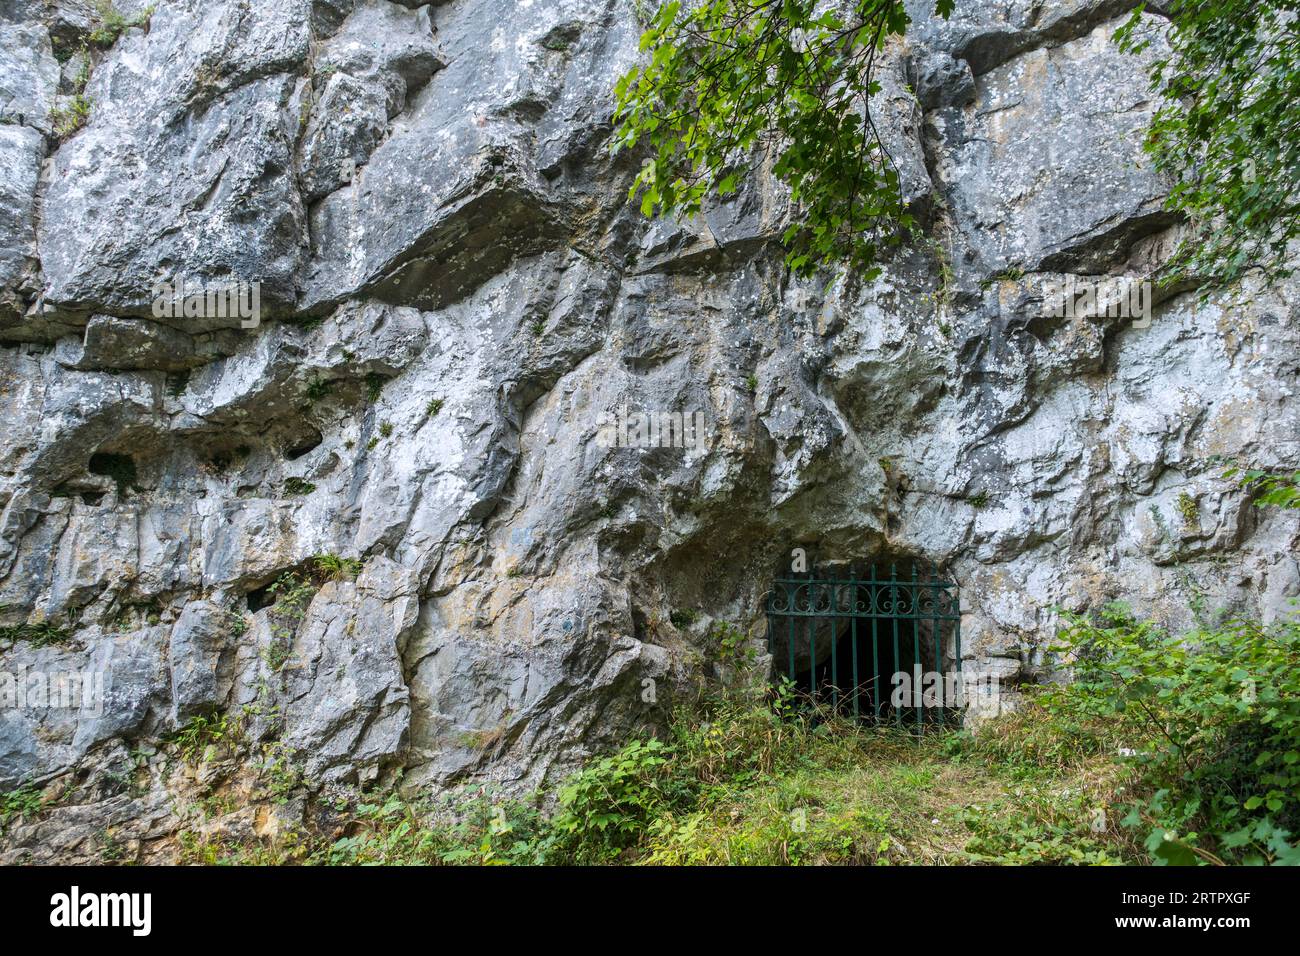 Grottes de Goyet cerca de Mozet, Gesves, Namur, Valonia, Bélgica. La habitación neandertal de las cuevas de piedra caliza se remonta al Paleolítico Medio Foto de stock